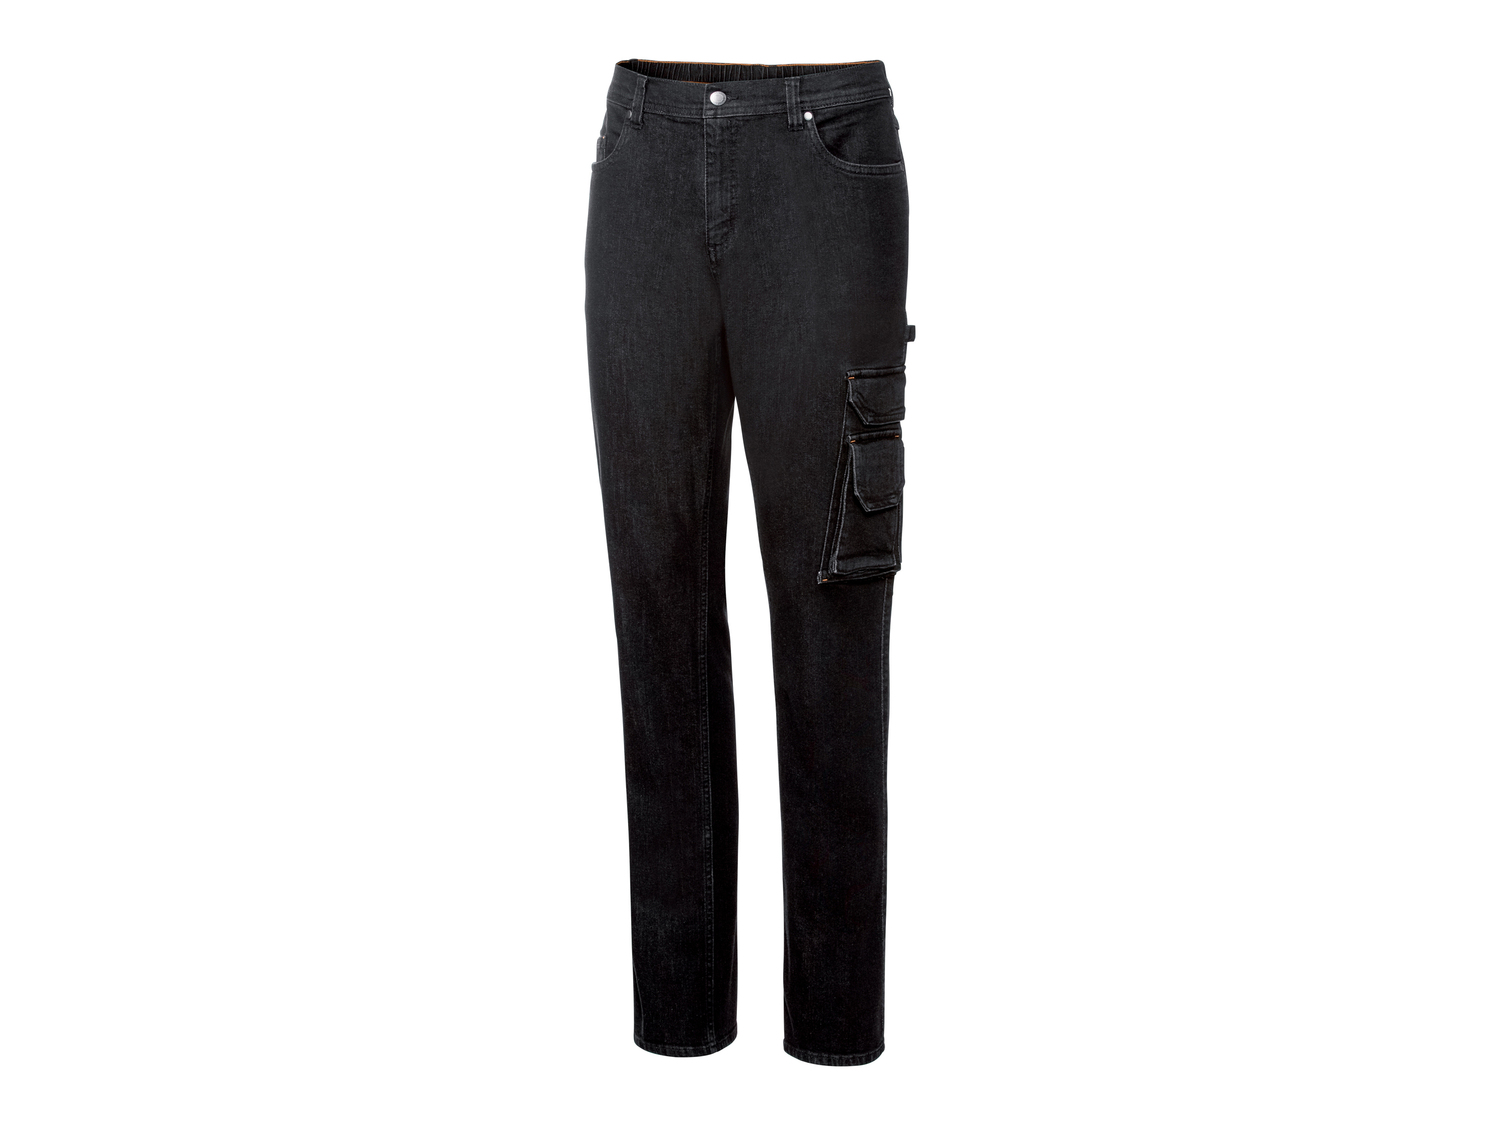 Pantaloni in Jeans da lavoro per uomo Parkside, prezzo 14.99 € 
Misure: 46-56
Taglie ...